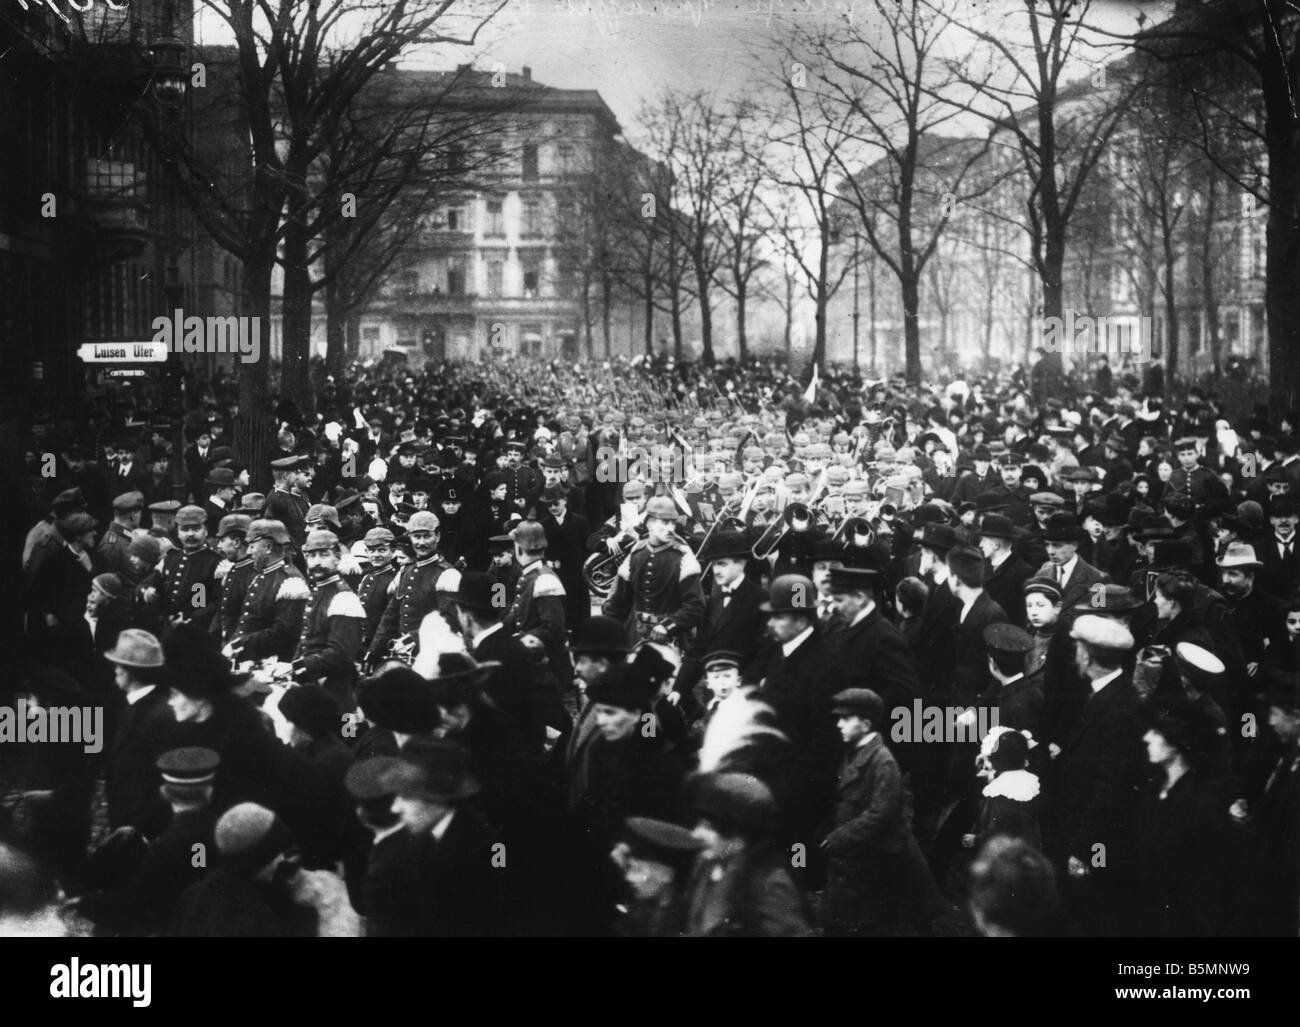 8 1914 8 0 A4 2 Berlin Mobilmachung 1914 Foto Erster Weltkrieg Mobilisierung August 1914 Freiwilligen Armee auf ihrem Weg nach der Statio Stockfoto